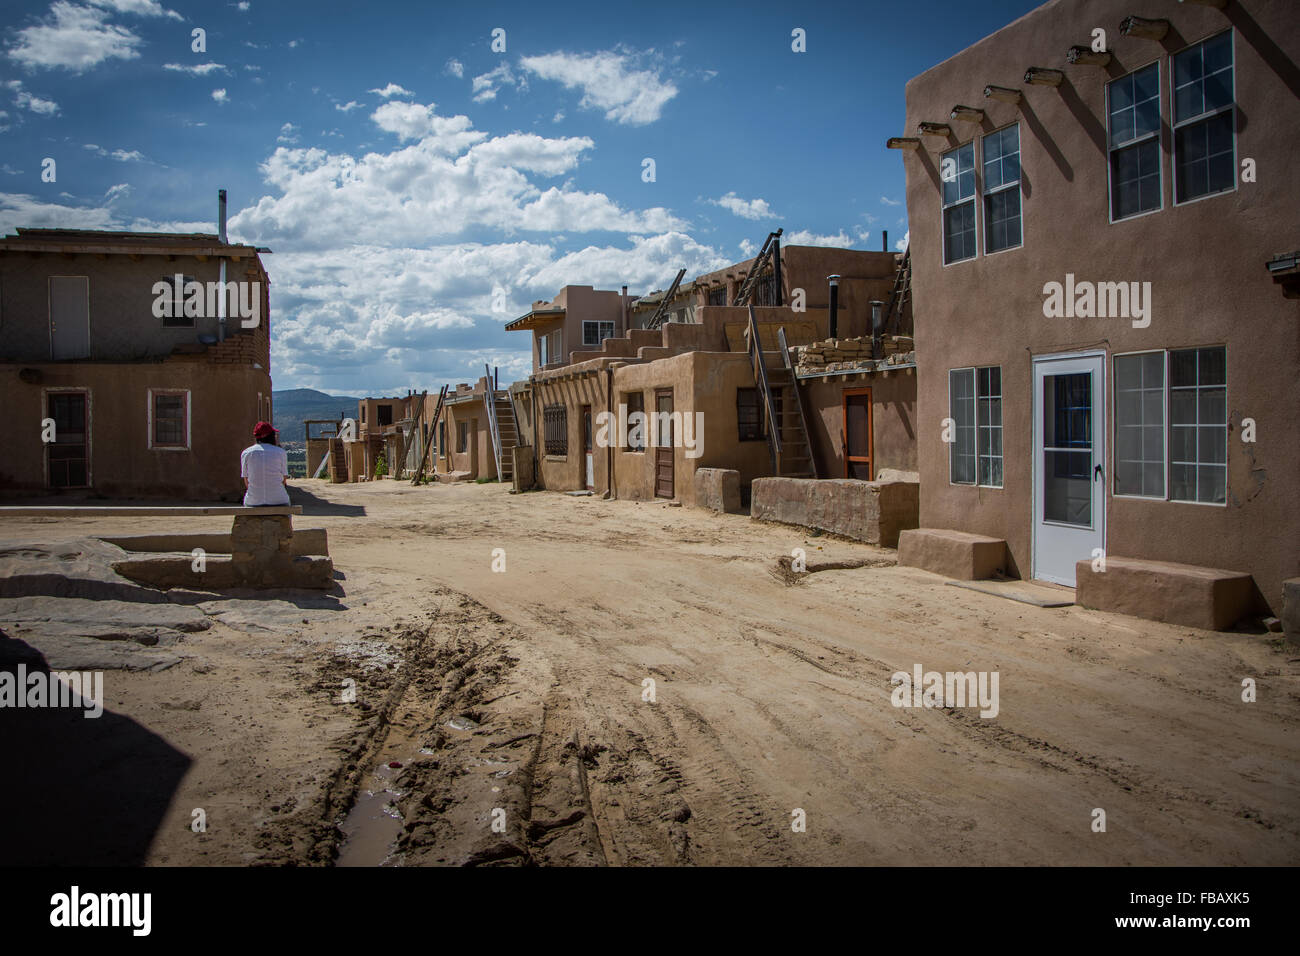 Adobe Häusern Sky City, Acoma Pueblo in New Mexico Stockfoto